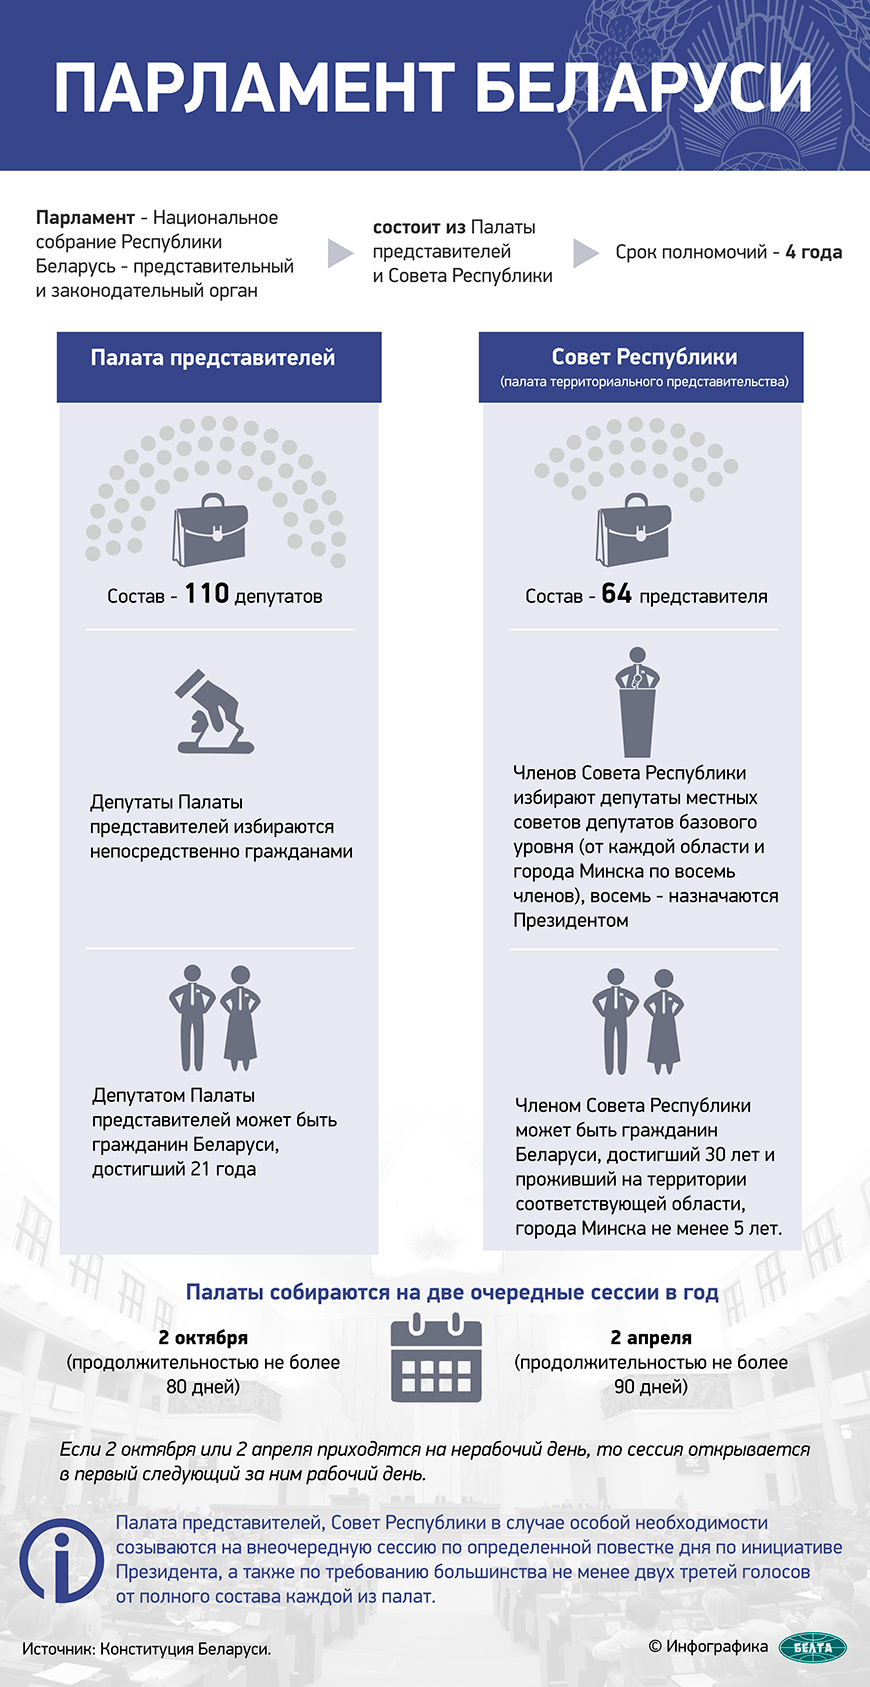 Александр Лукашенко охарактеризовал новый состав парламента и состоявшиеся выборы